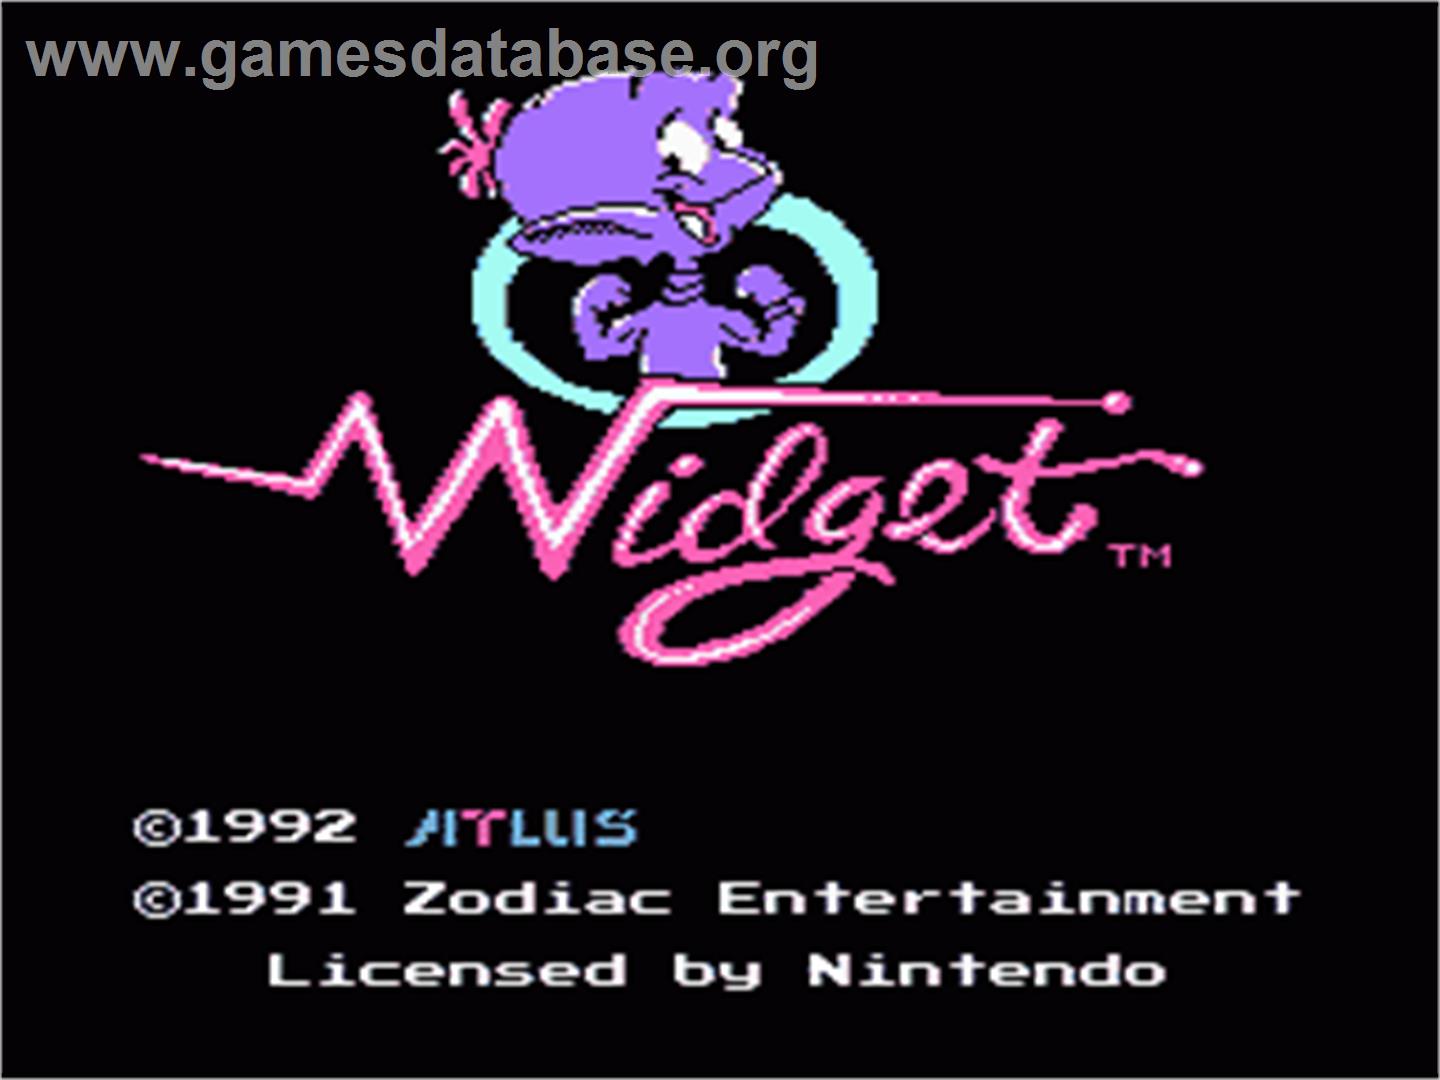 Widget - Nintendo NES - Artwork - Title Screen